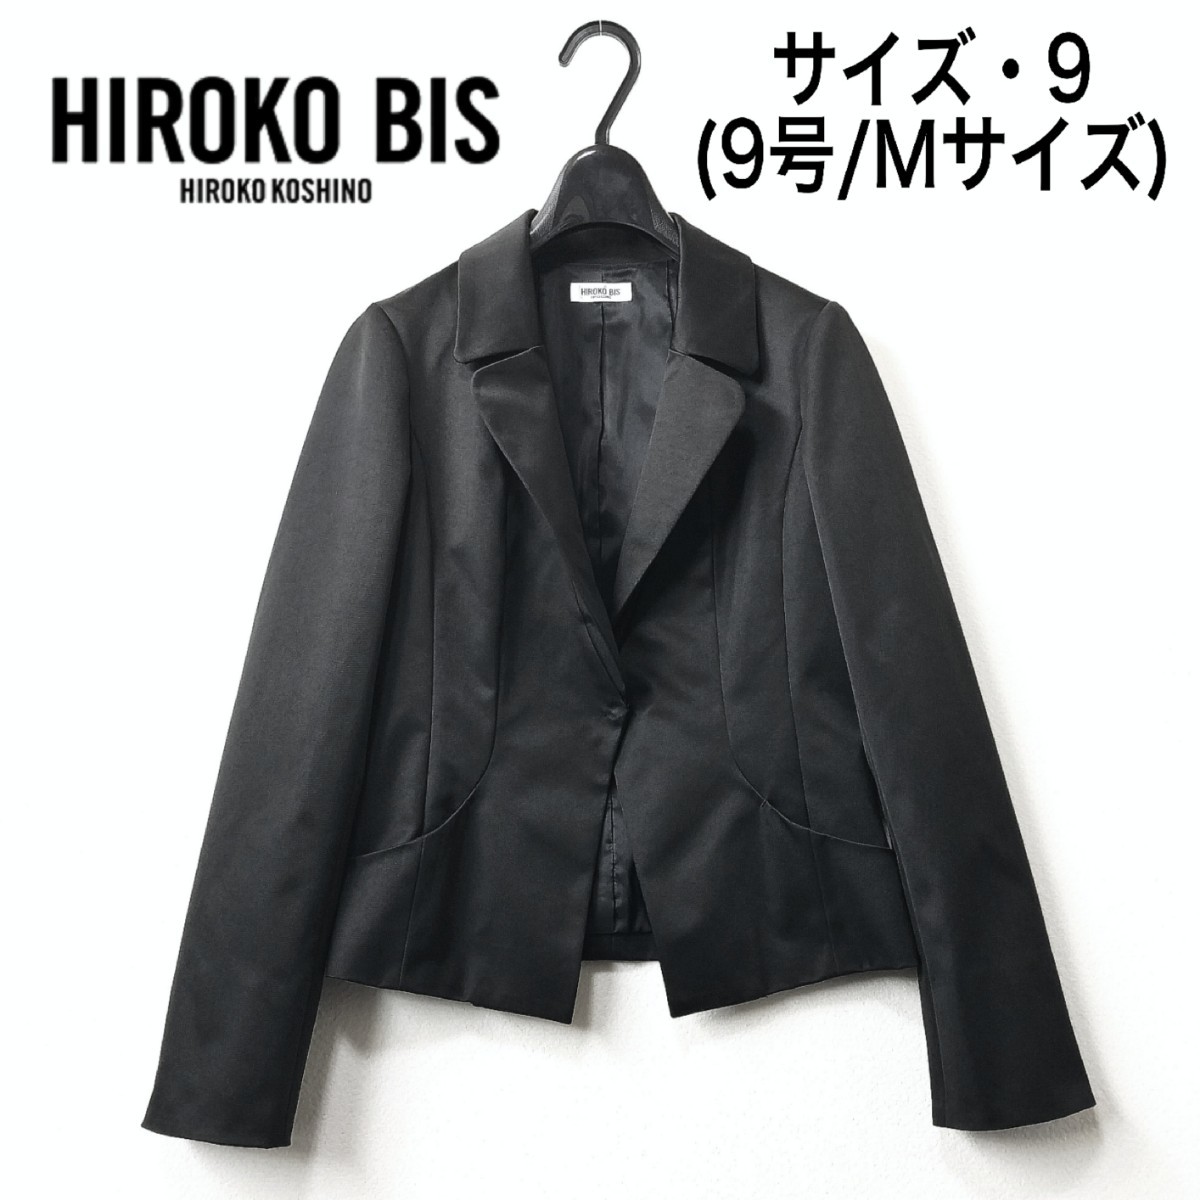 美品 HIROKOBIS ヒロコビス ジャケット ノーカラー 羽織り 毛混 M